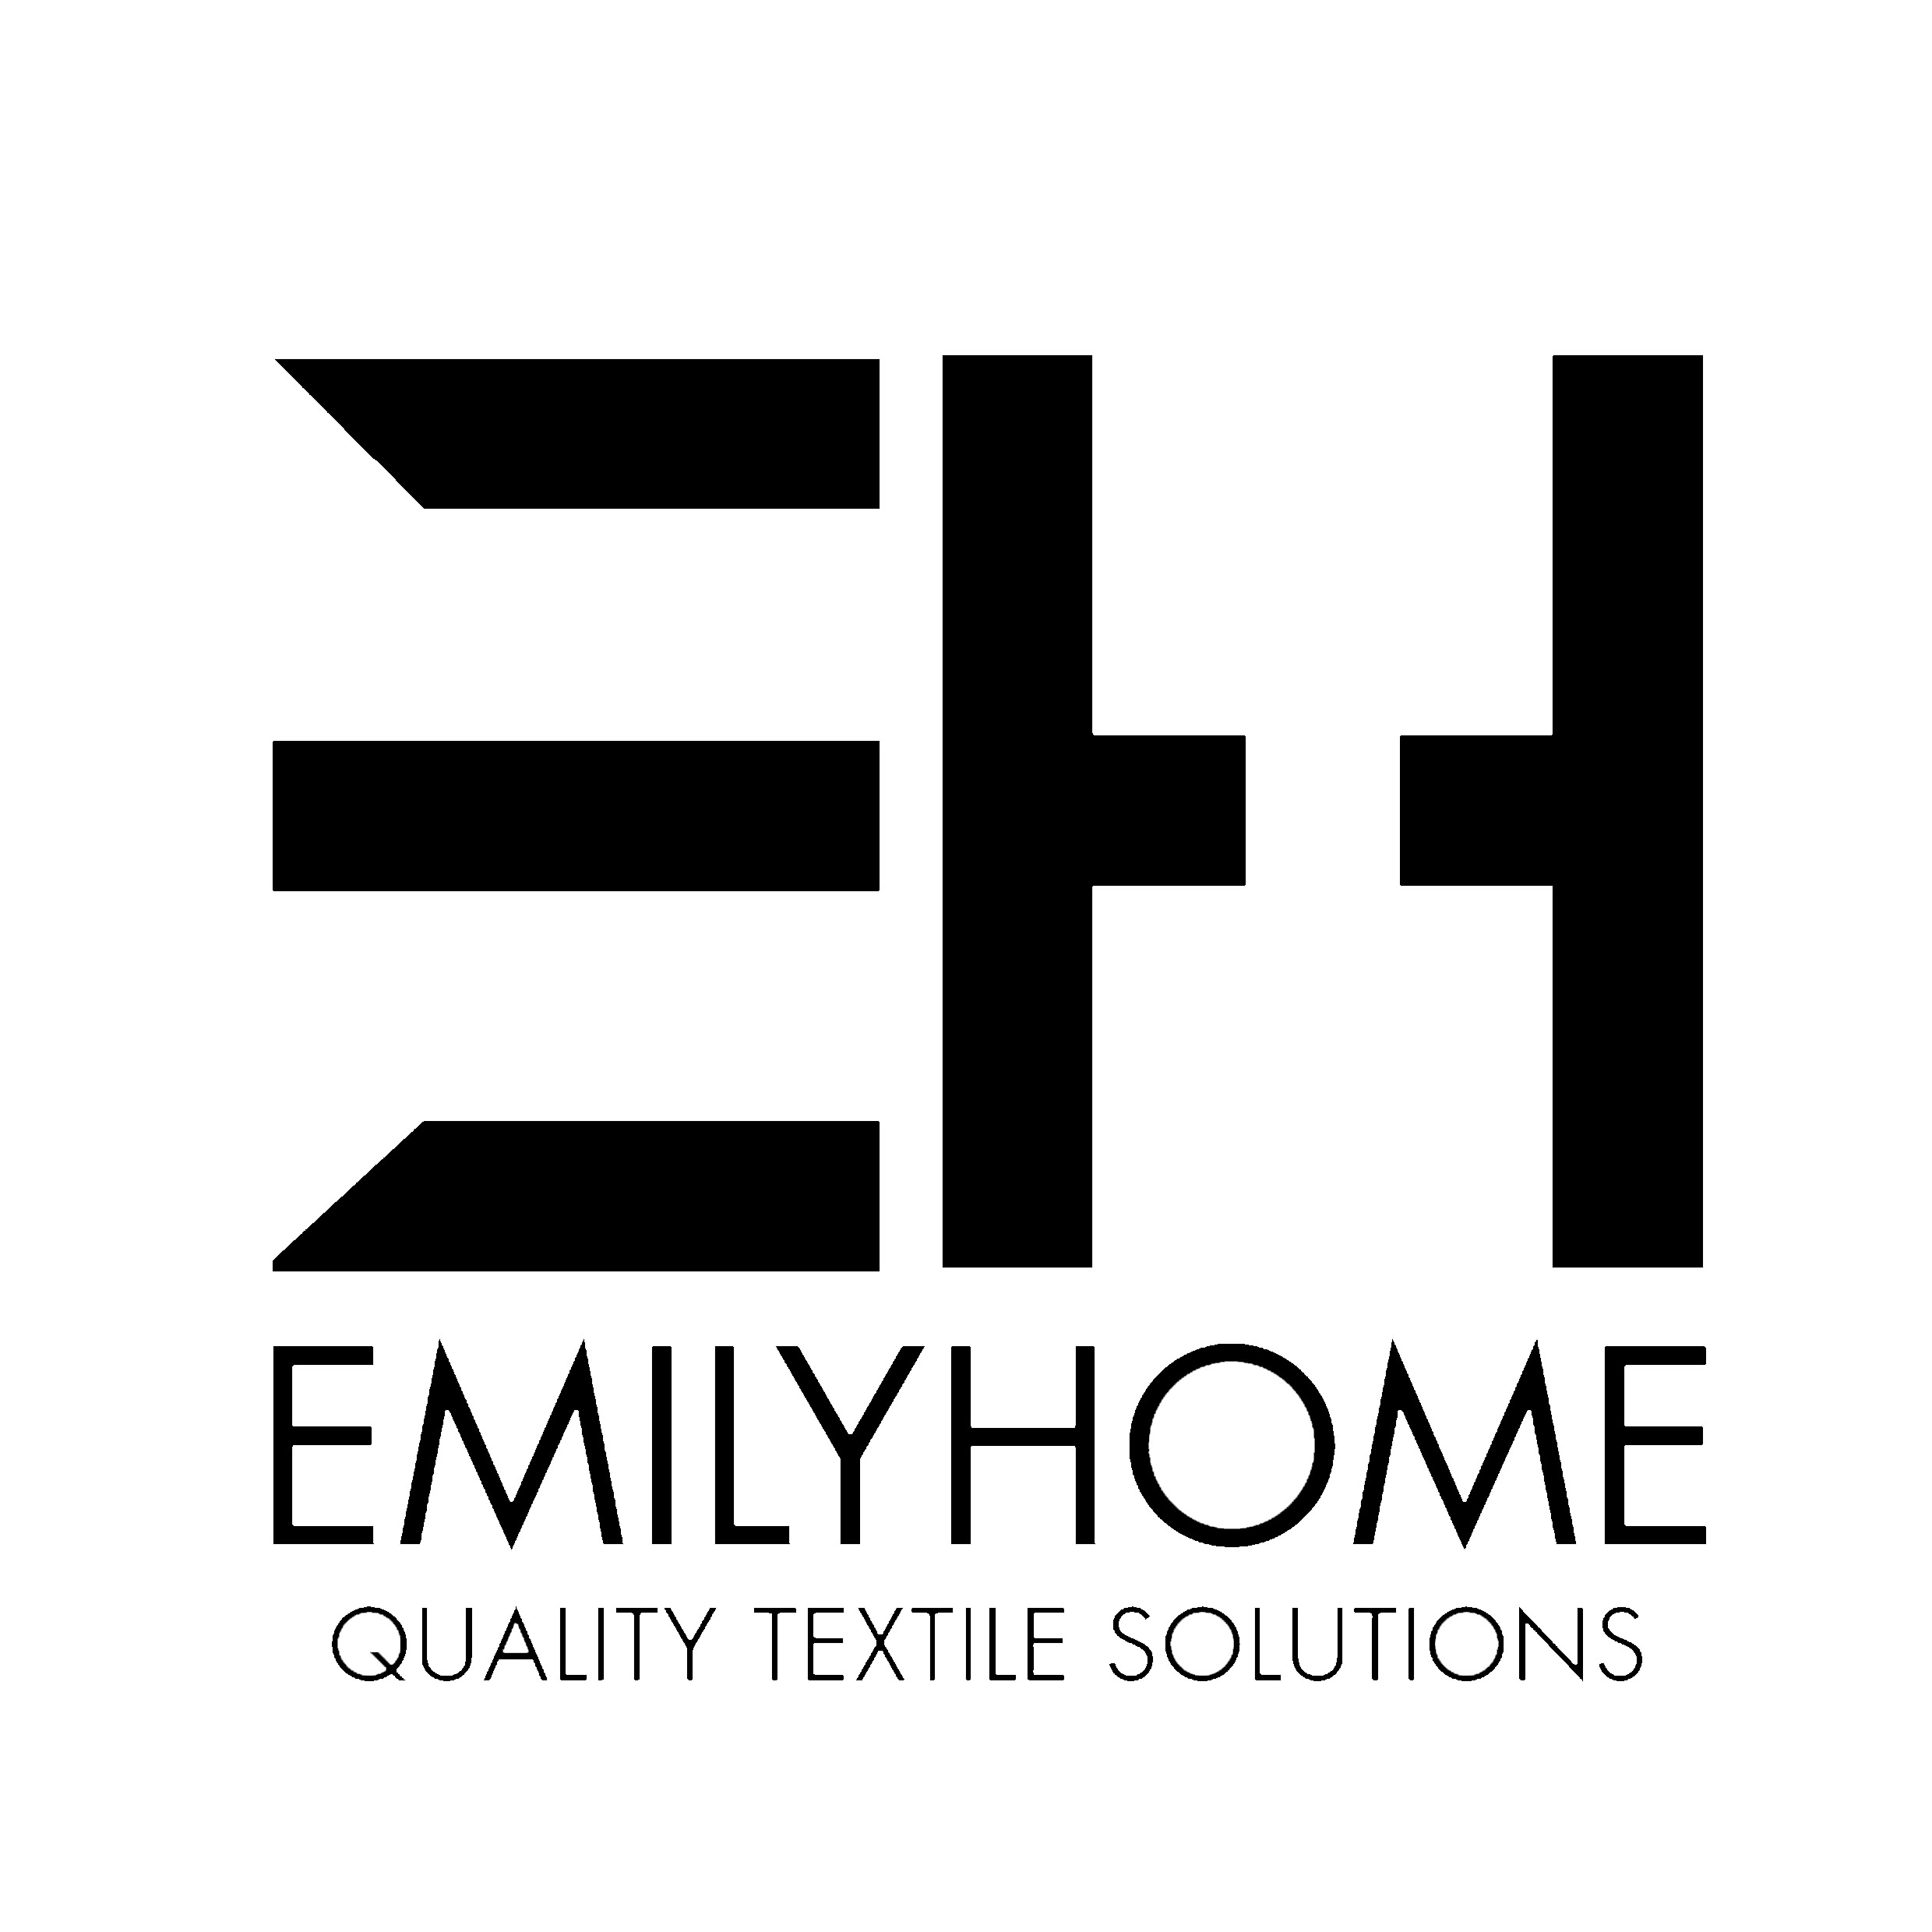 Emily Home